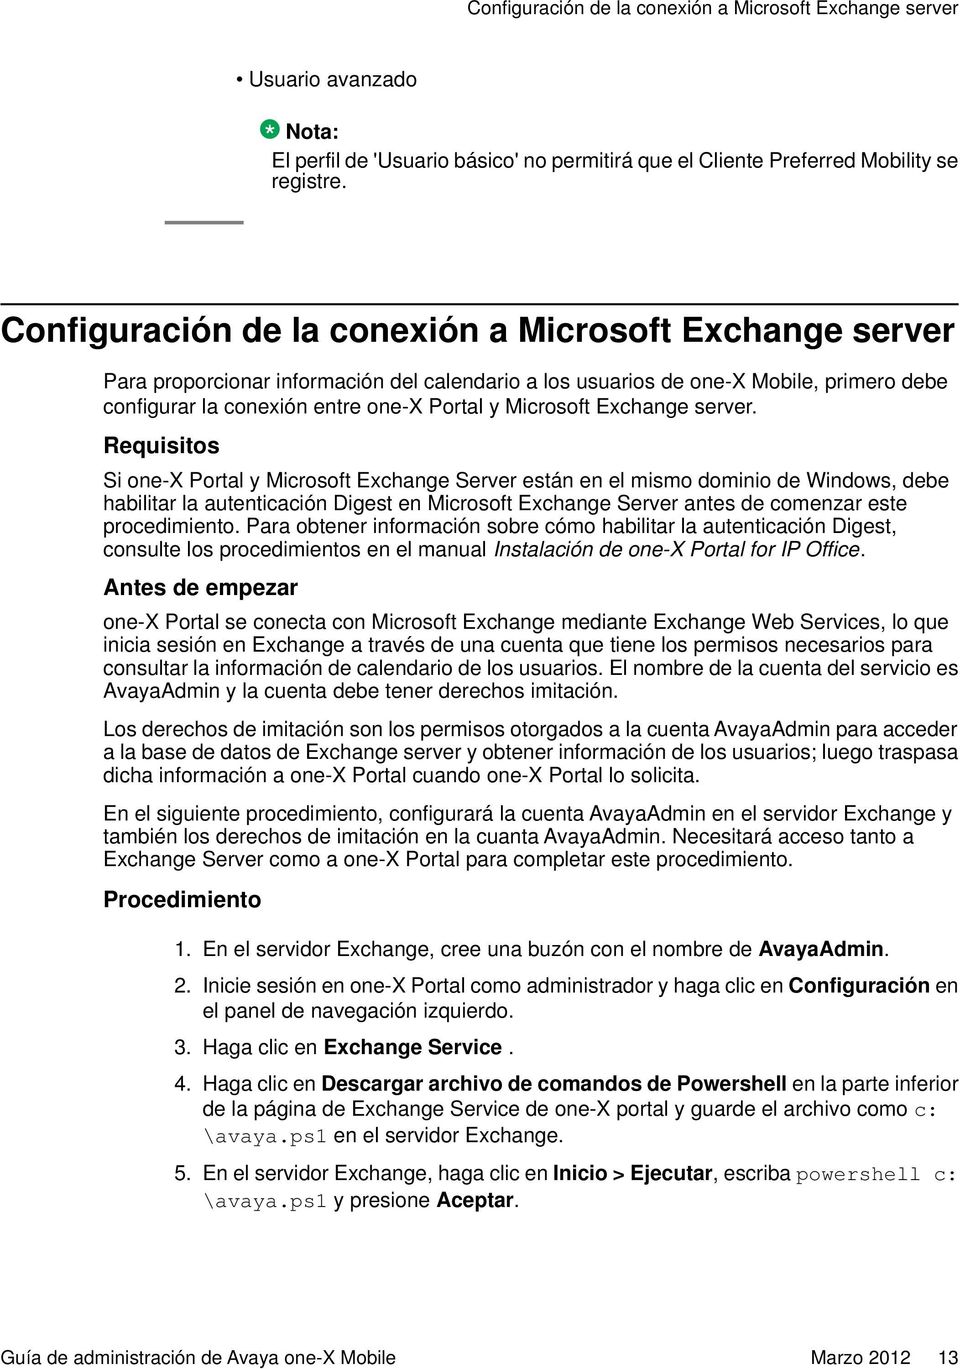 Microsoft Exchange server.